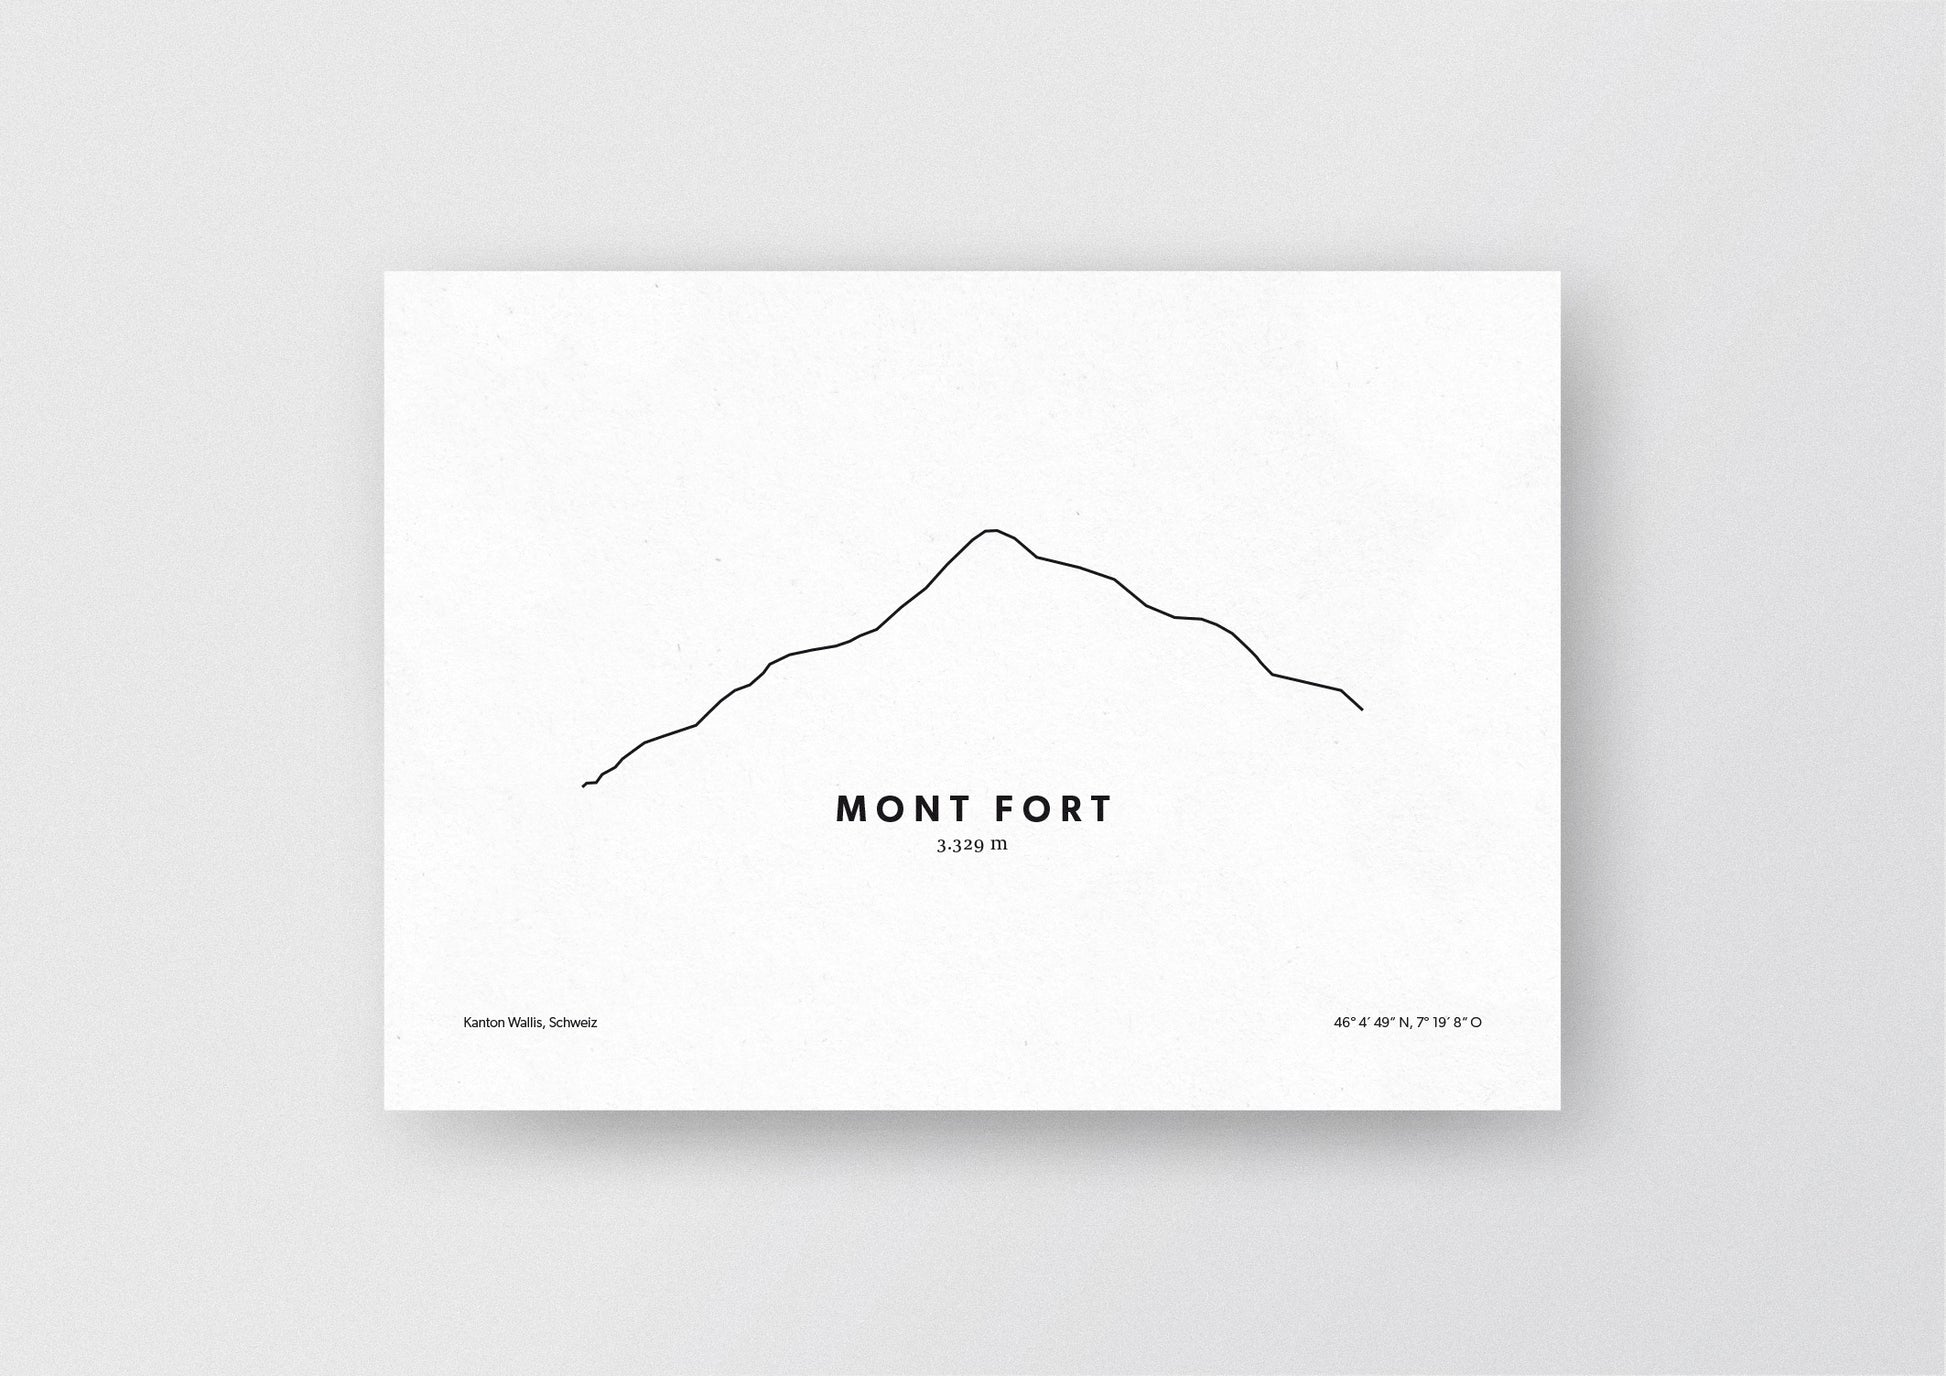 Minimalistische Illustration des Mont Fort in den Walliser Alpen, als stilvoller Einrichtungsgegenstand für Zuhause.